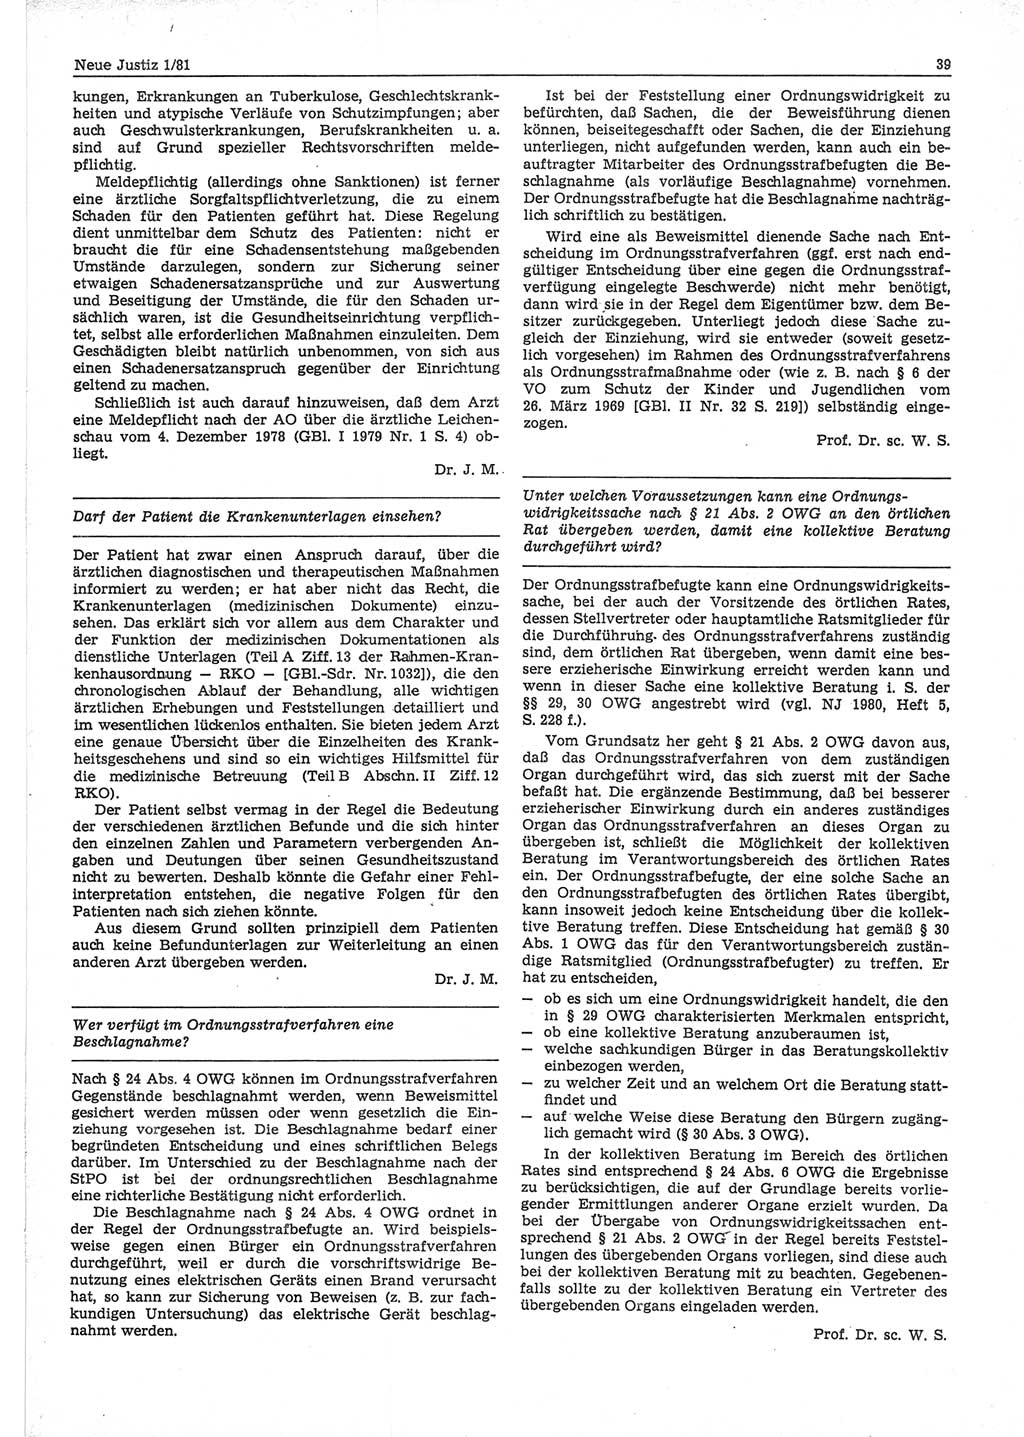 Neue Justiz (NJ), Zeitschrift für sozialistisches Recht und Gesetzlichkeit [Deutsche Demokratische Republik (DDR)], 35. Jahrgang 1981, Seite 39 (NJ DDR 1981, S. 39)